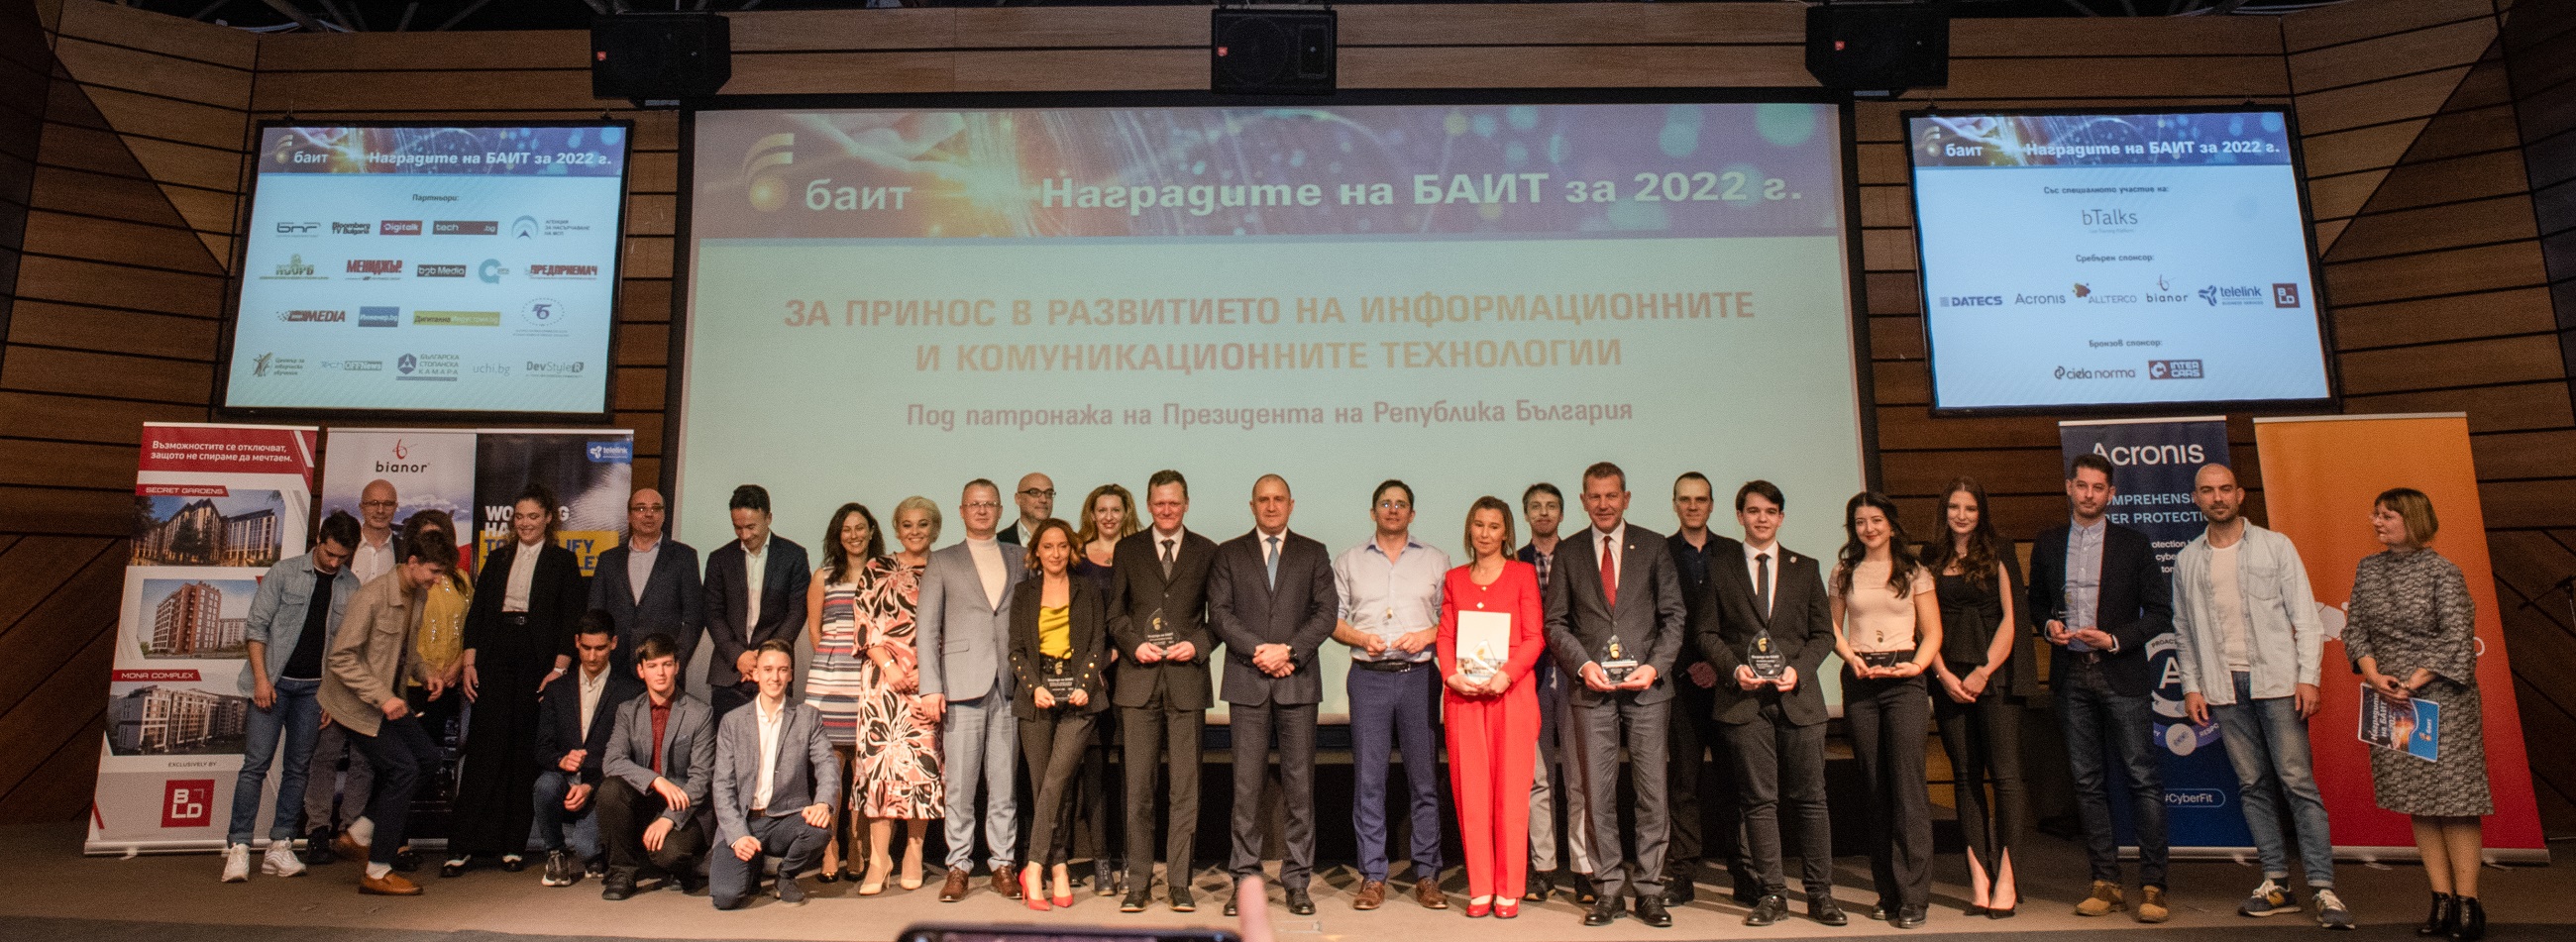 Известни са победителите в конкурса „Наградите на БАИТ” за 2022 г.